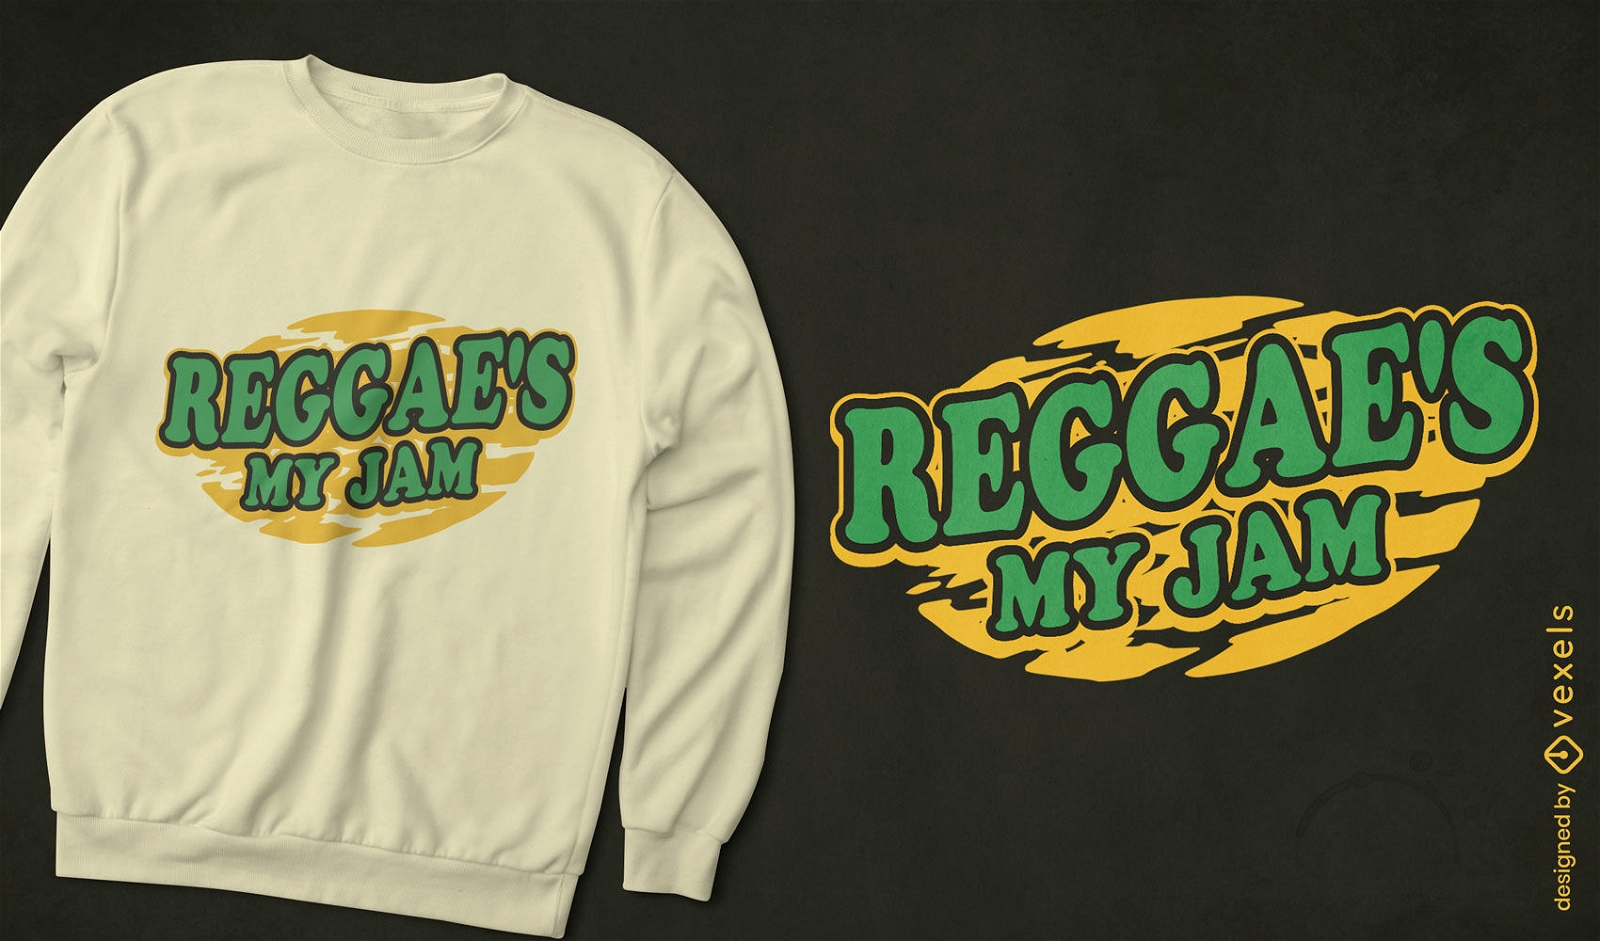 Dise?o de camiseta de mermelada de m?sica reggae.